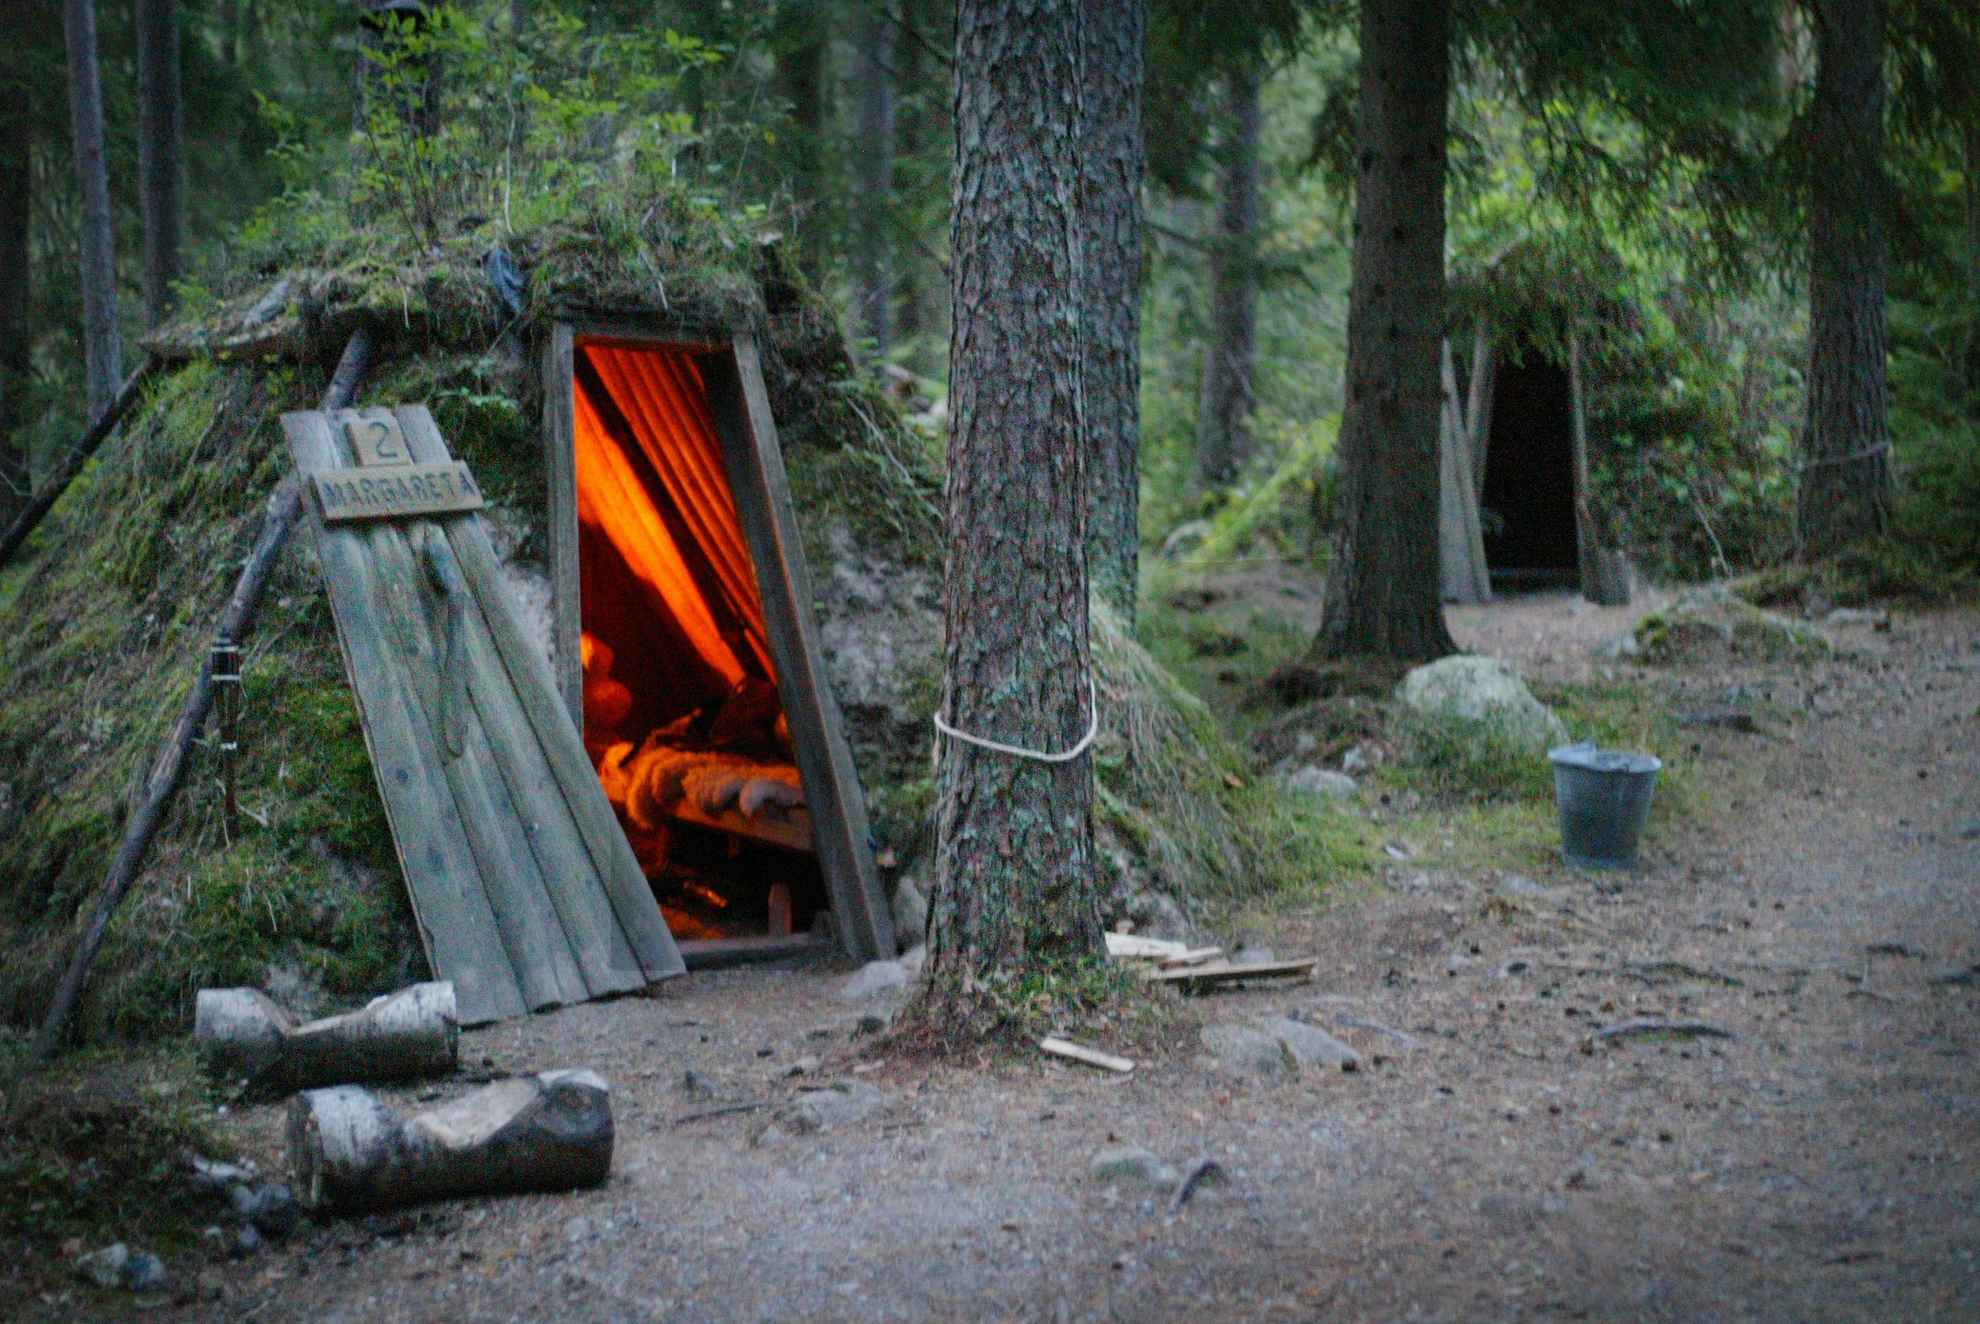 Zwei mit Moos bewachsene Waldhütten in einem Wald. In einer der Hütten brennt ein Kamin.